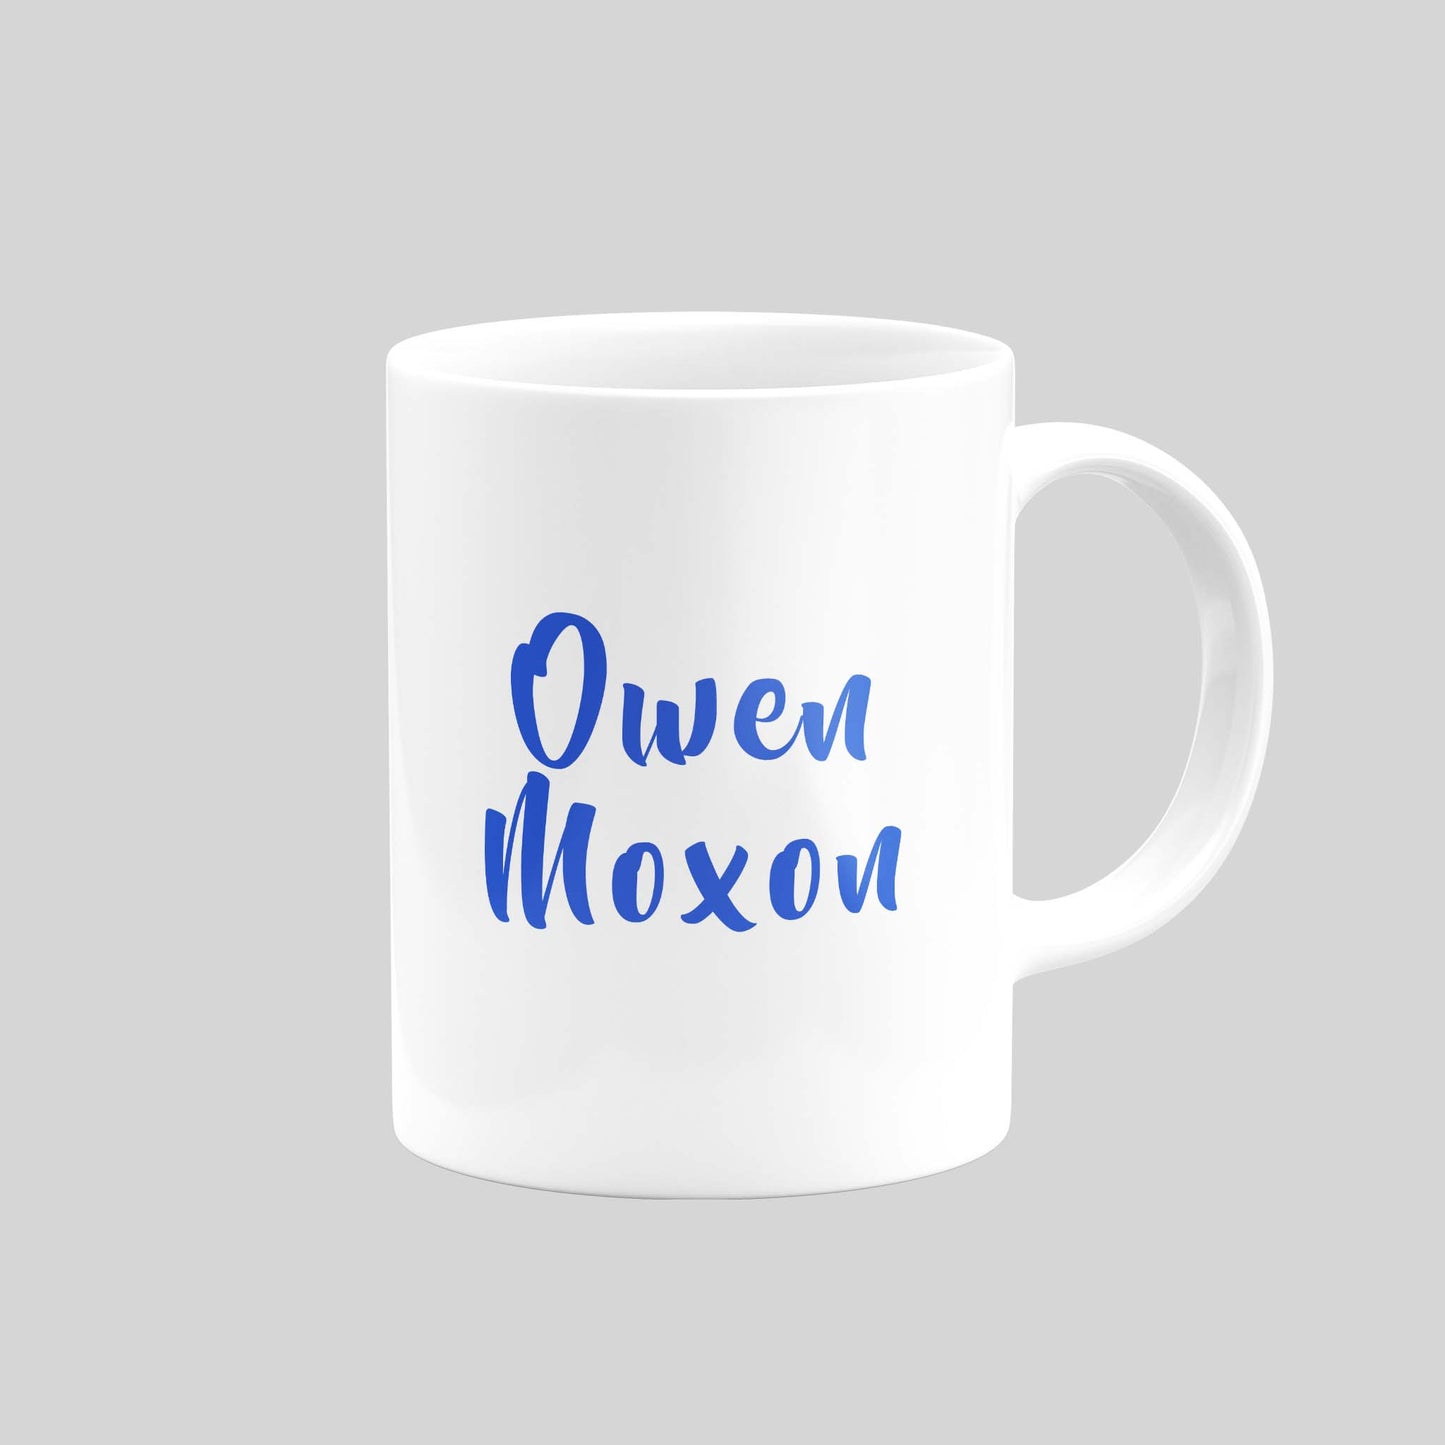 Owen Moxon Blue Mug